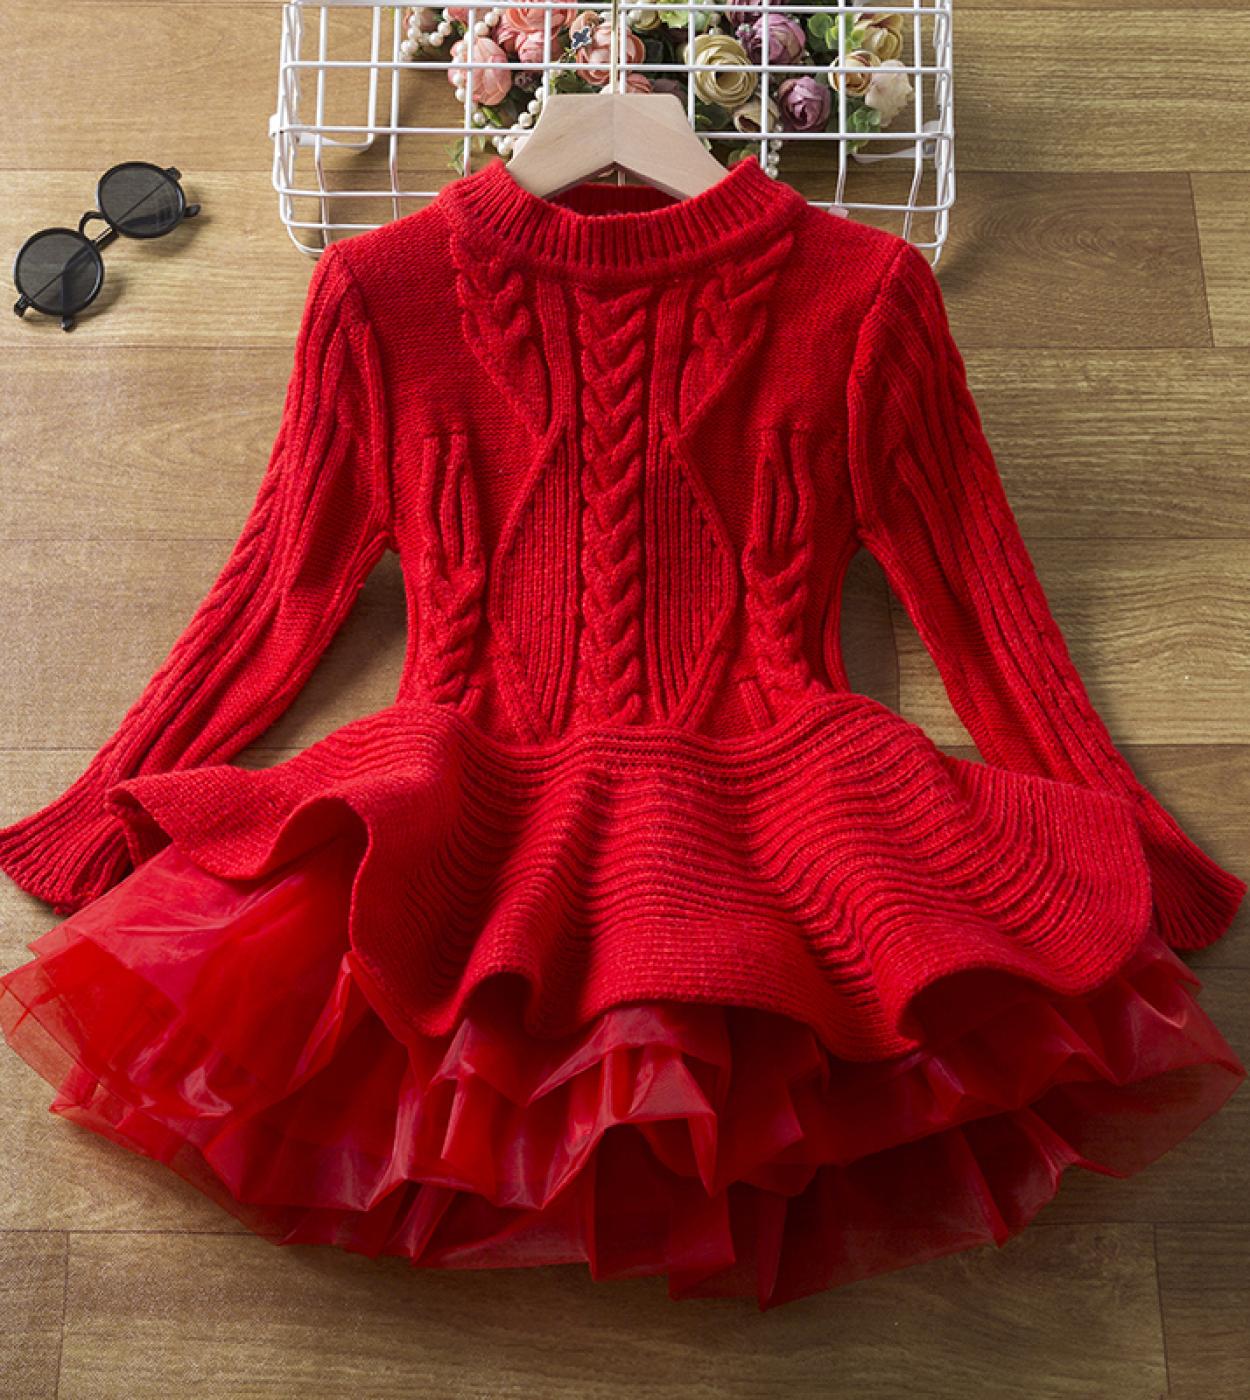 Hiver chaud pull tricoté manches longues filles robes pour enfants rouge fête de noël robe de princesse 3 8 ans enfants Casu